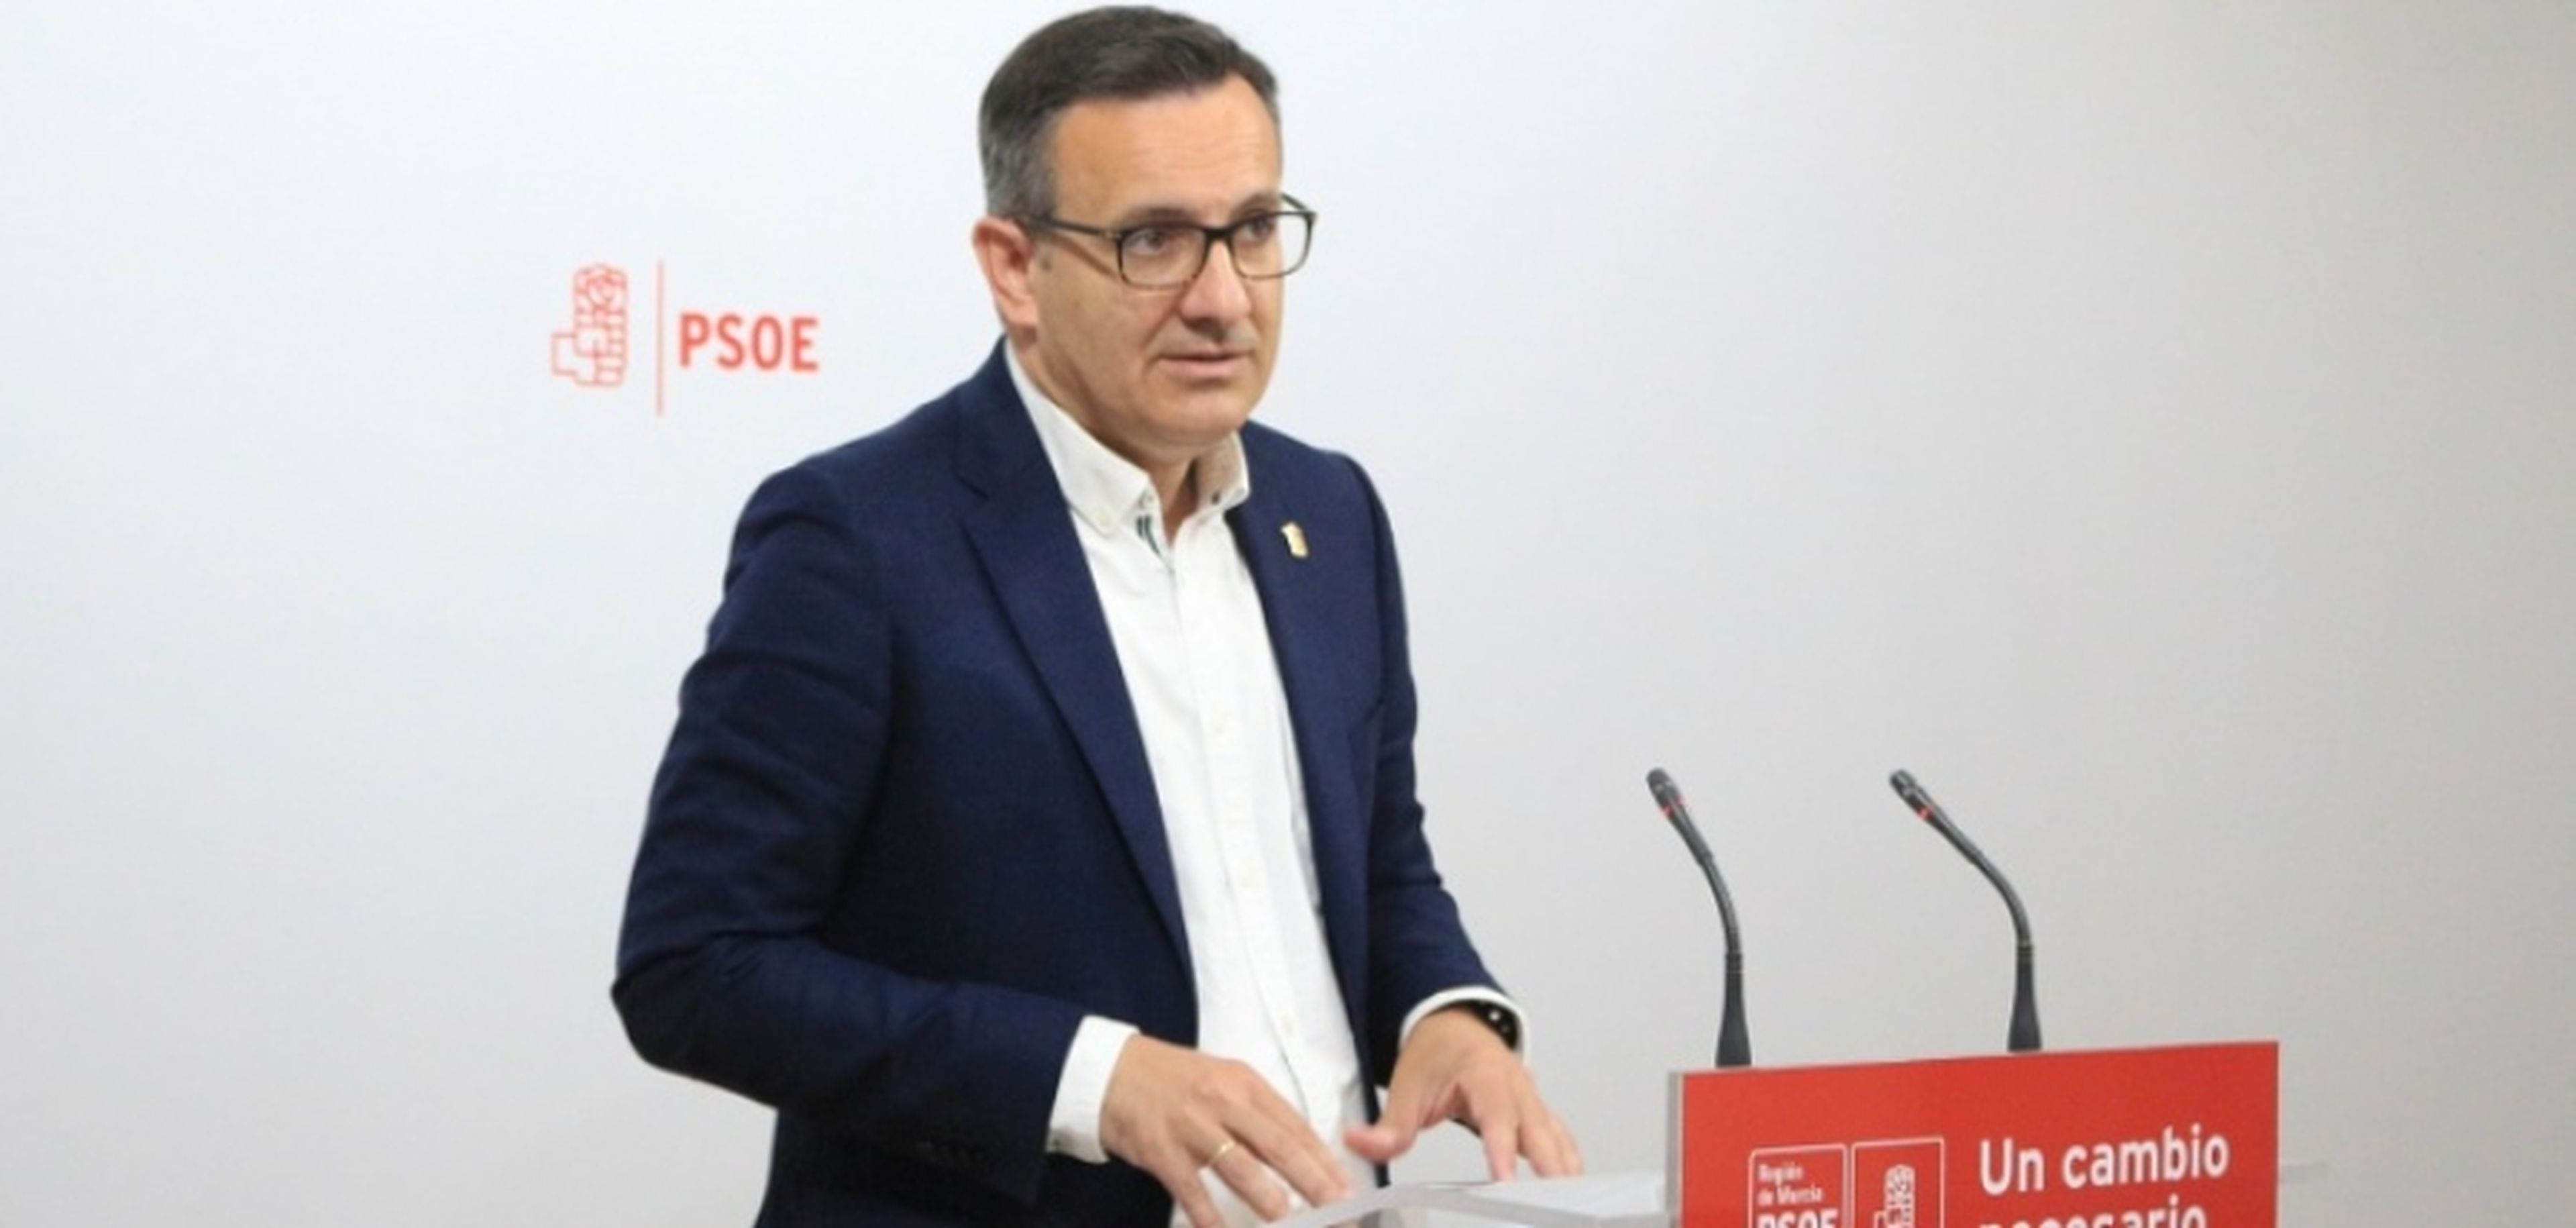 Diego Conesa, candidato del PSOE a la alcaldía de Murcia